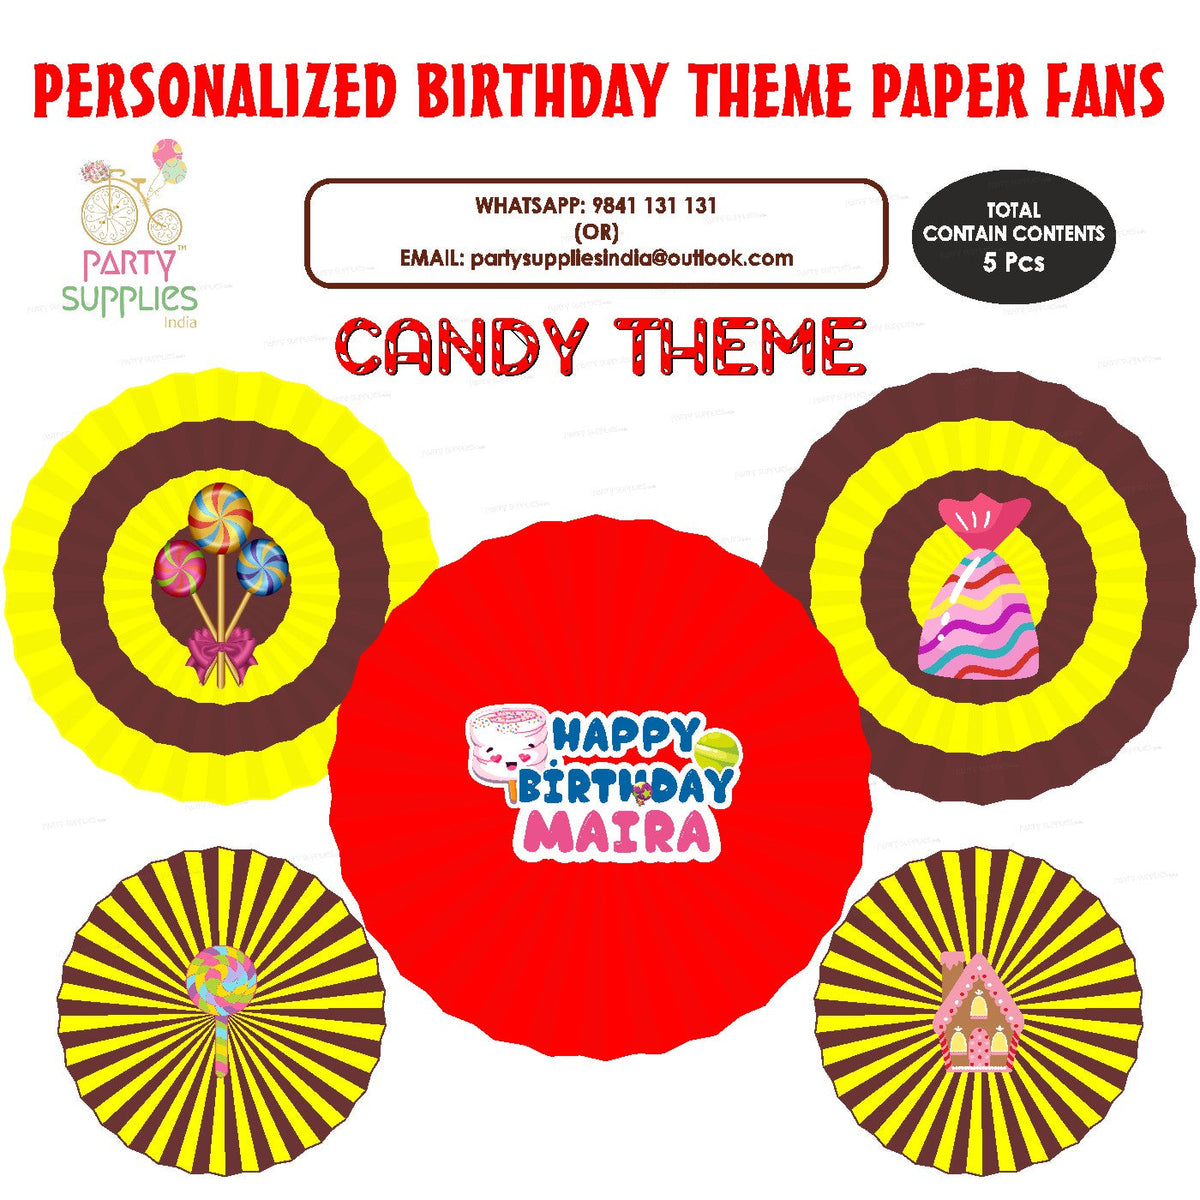 PSI Candy Theme Paper Fan